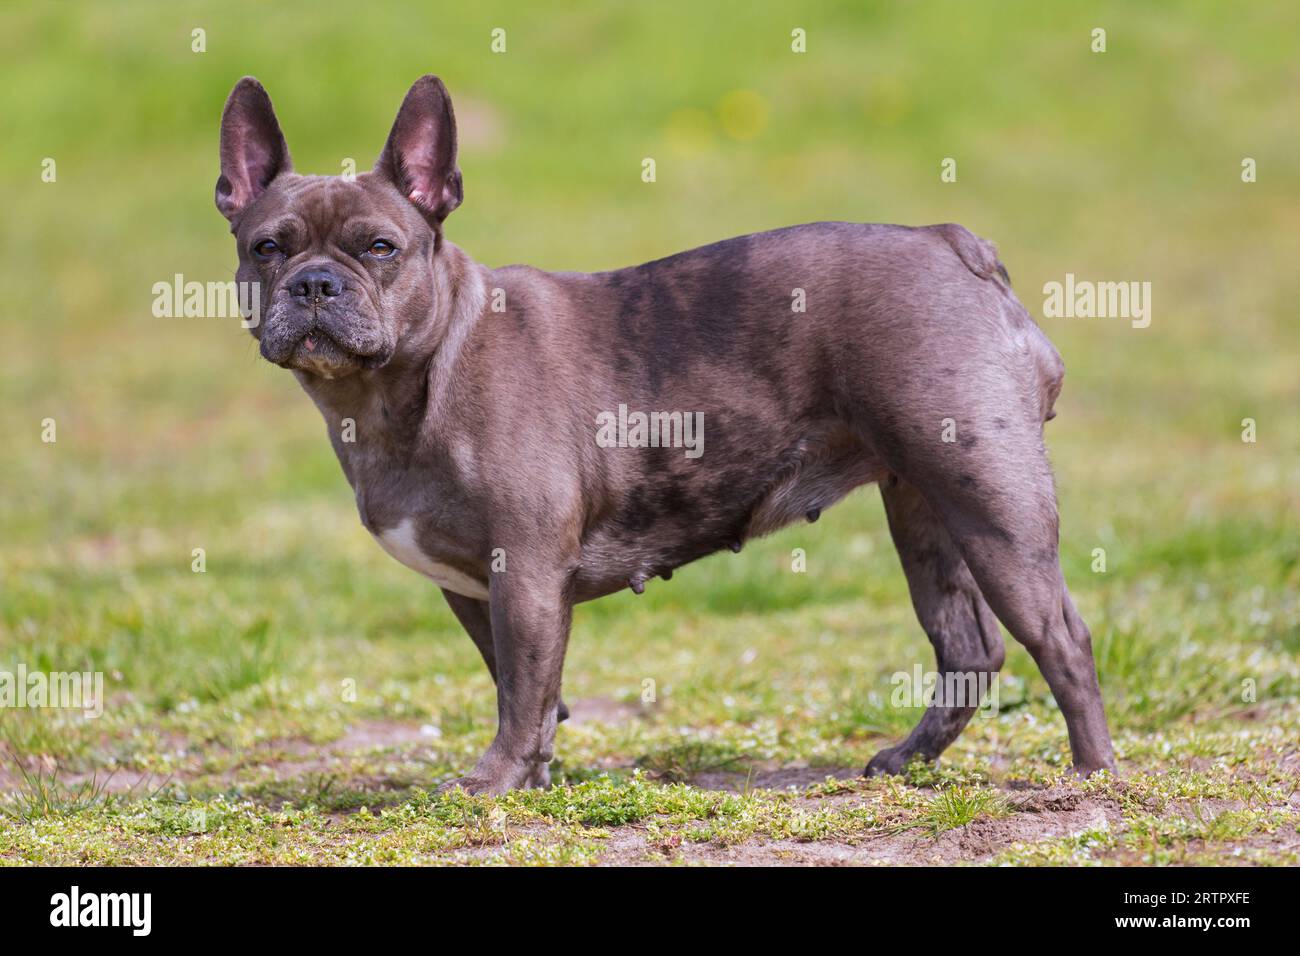 Französische Bulldogge mit flieder / Isabella frenchie / Bouledogue Francais, Rasse des französischen Begleithunds oder Spielzeughundes im Garten Stockfoto